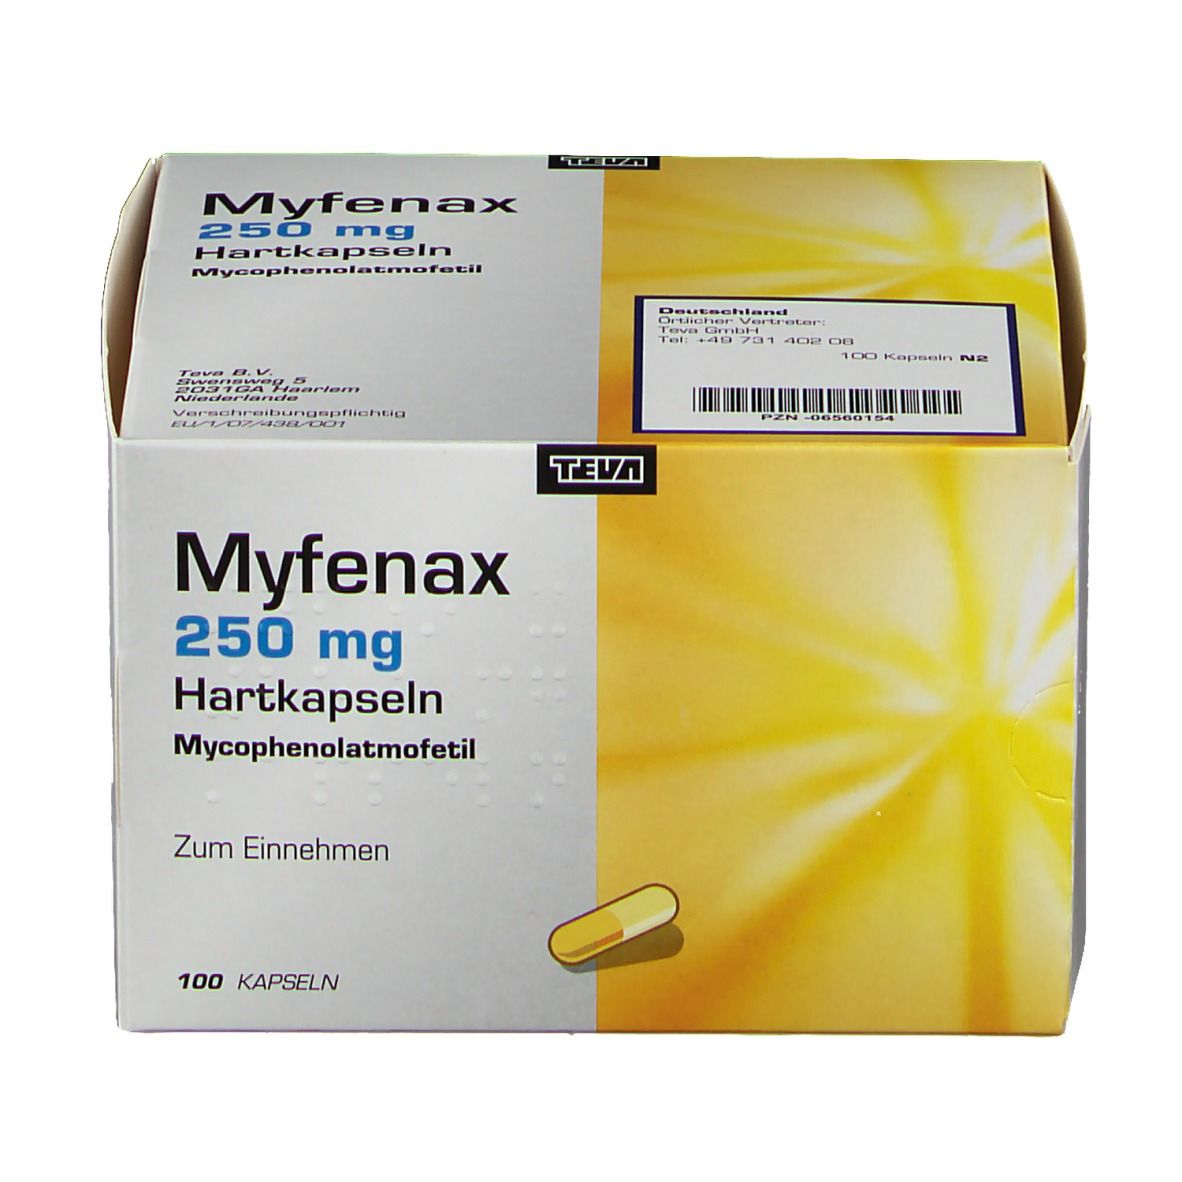 Myfenax 250 mg